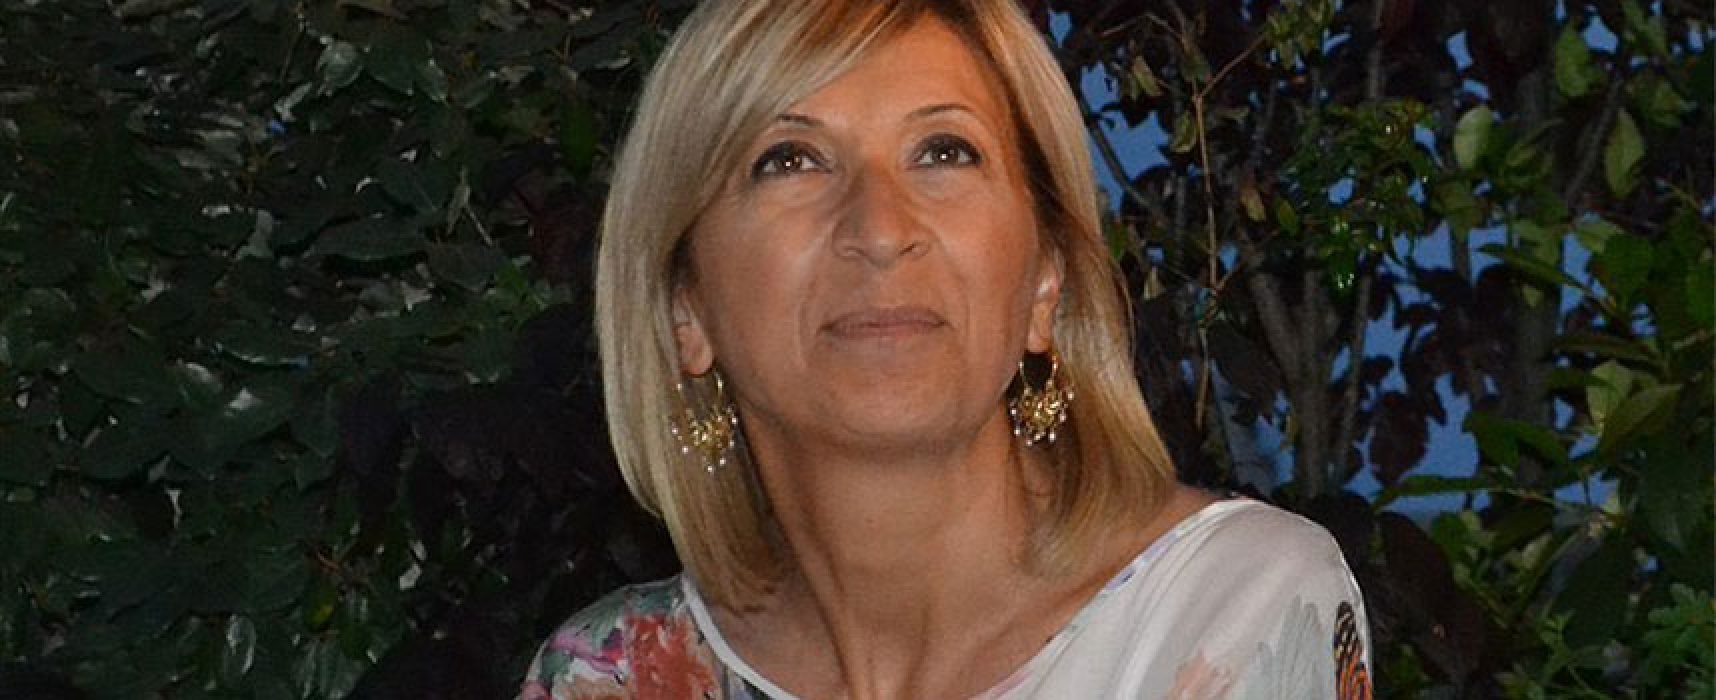 La scrittrice Paola Colarossi presenta a Bisceglie “Ti prometto il mare”